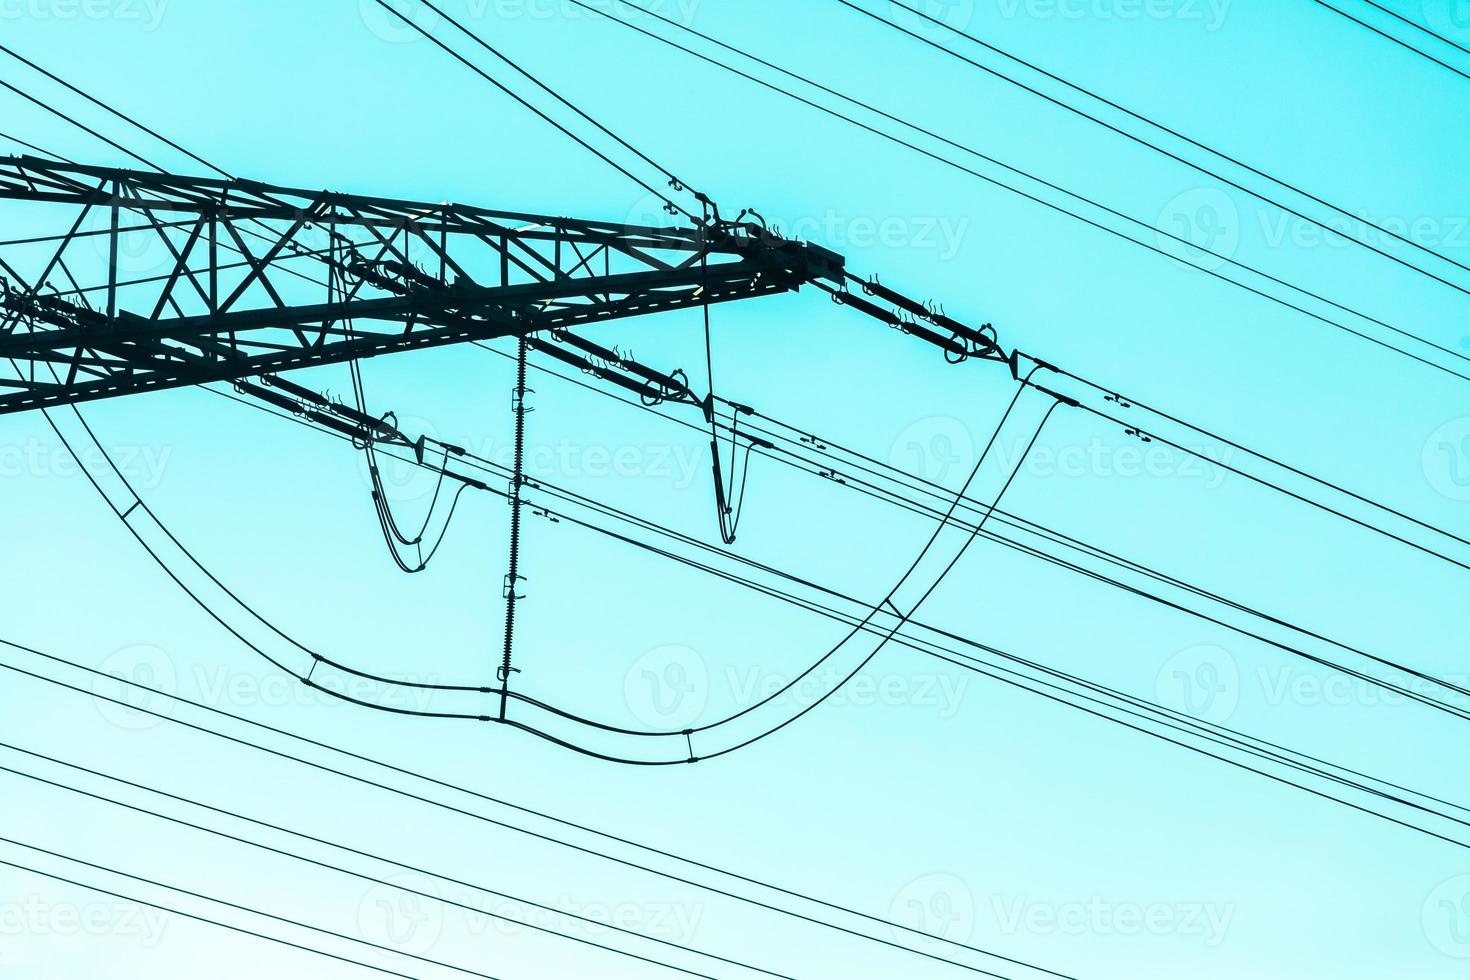 gros plan sur les câbles du réseau électrique sous le ciel bleu, image abstraite photo